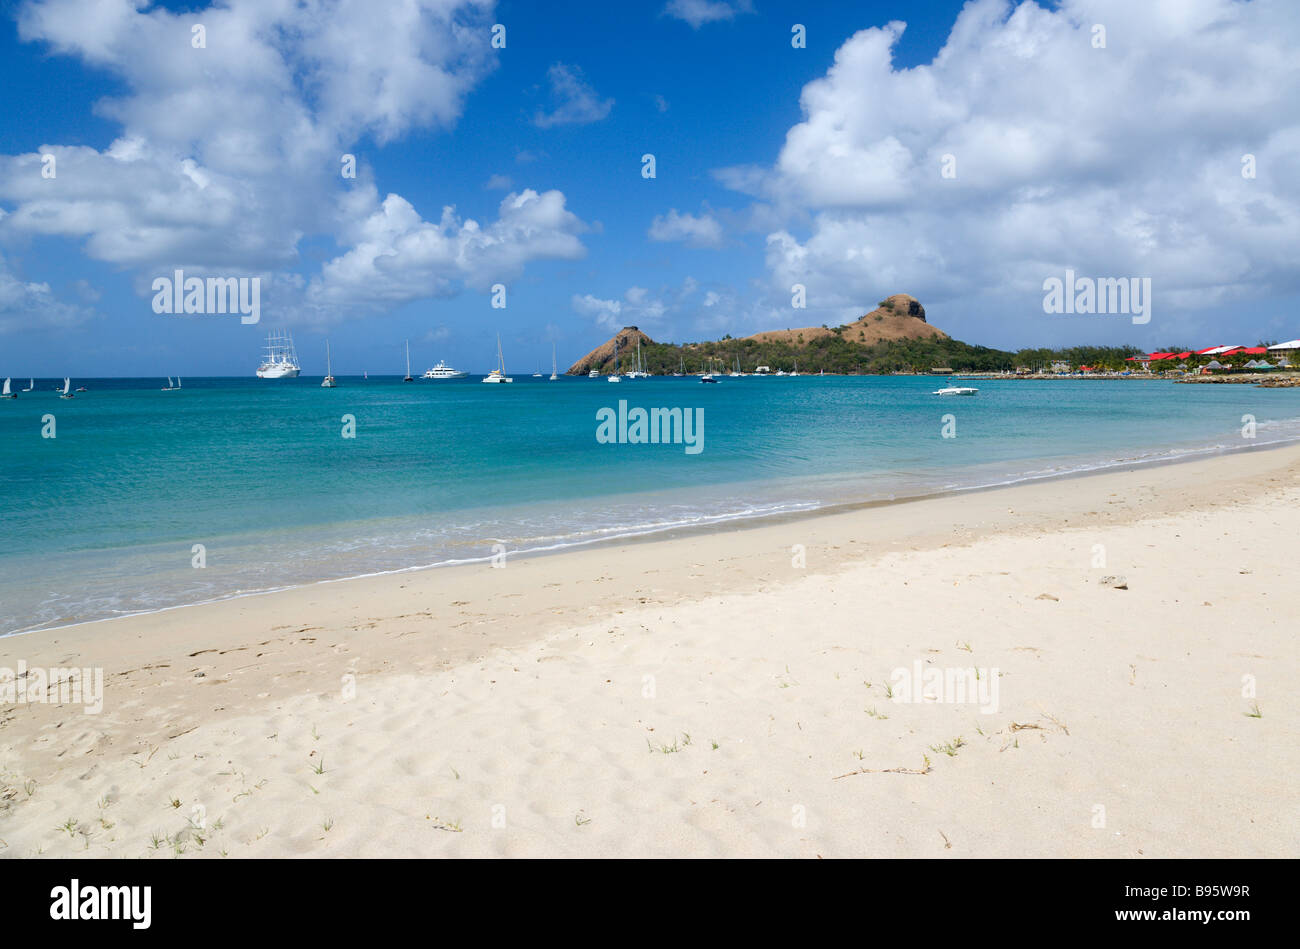 Antilles Caraïbes Sainte-Lucie Gros Islet Pigeon Island vu à partir de la plage voisine sur causeway avec yachts au mouillage à Rodney Bay Banque D'Images